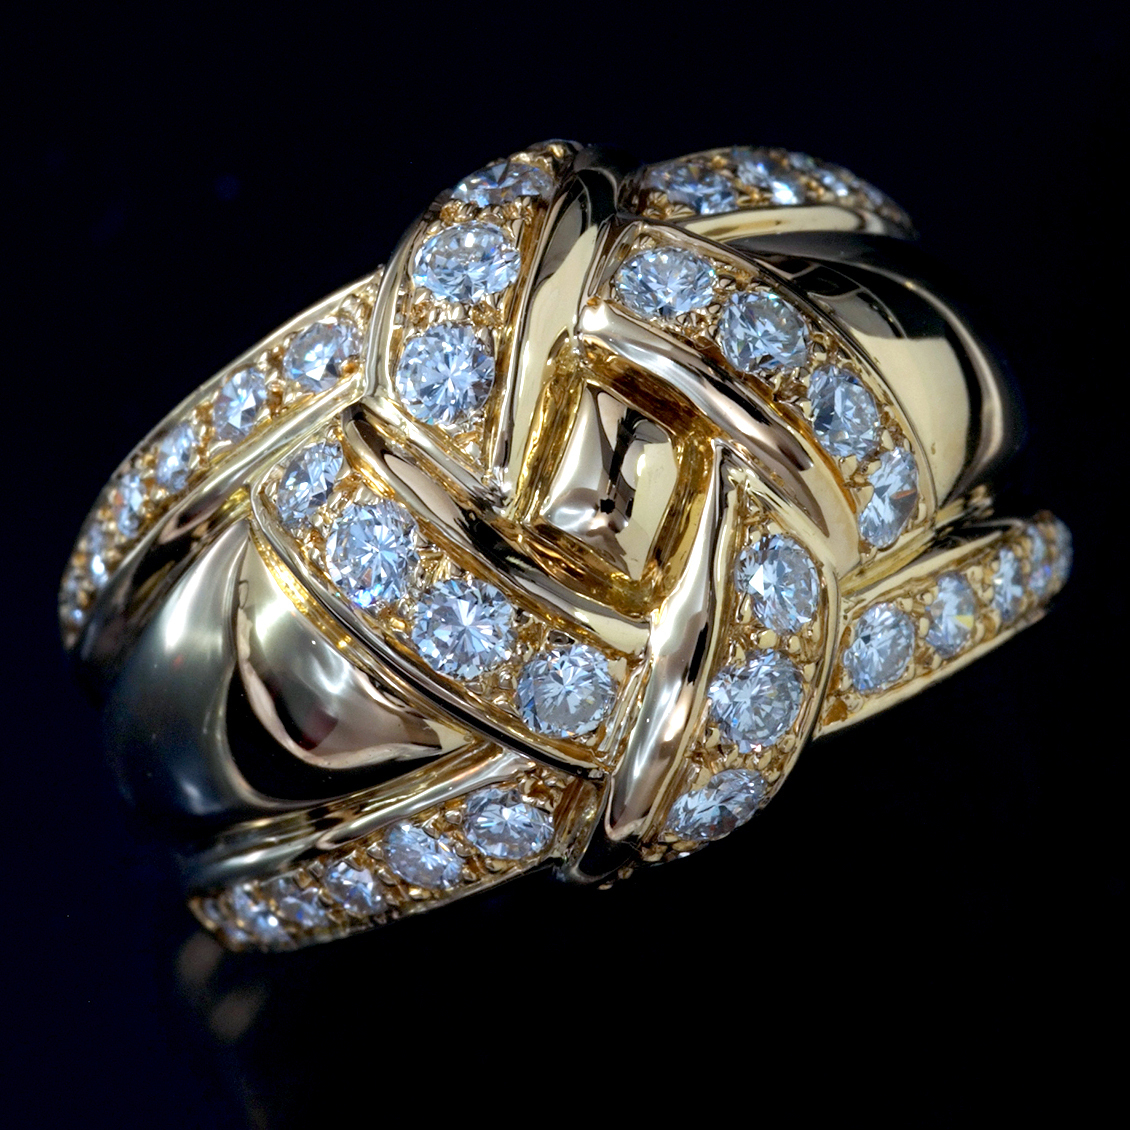 激安通販 最高級18金無垢セレブリティリング 天然絶品ダイヤモンド F0830【Dior】ディオール サイズ18号 縦幅15.7mm 重量13.35g 指輪